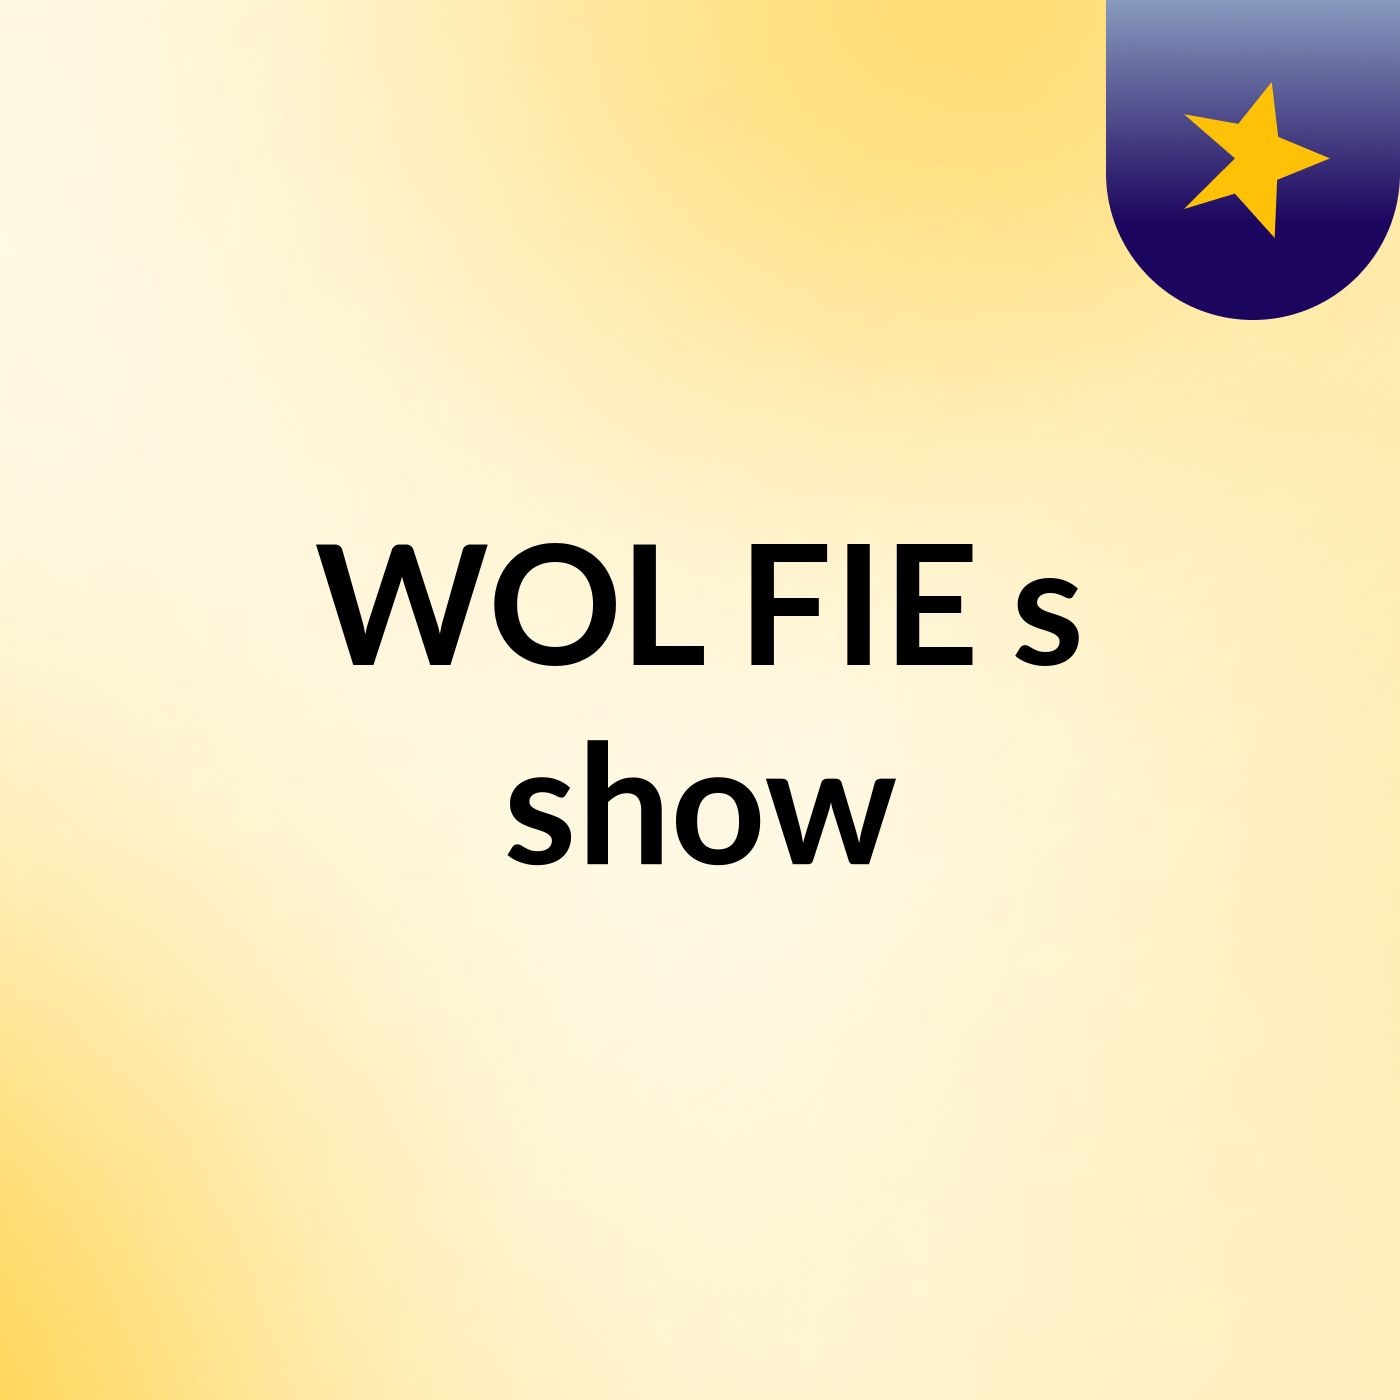 WOL FIE's show